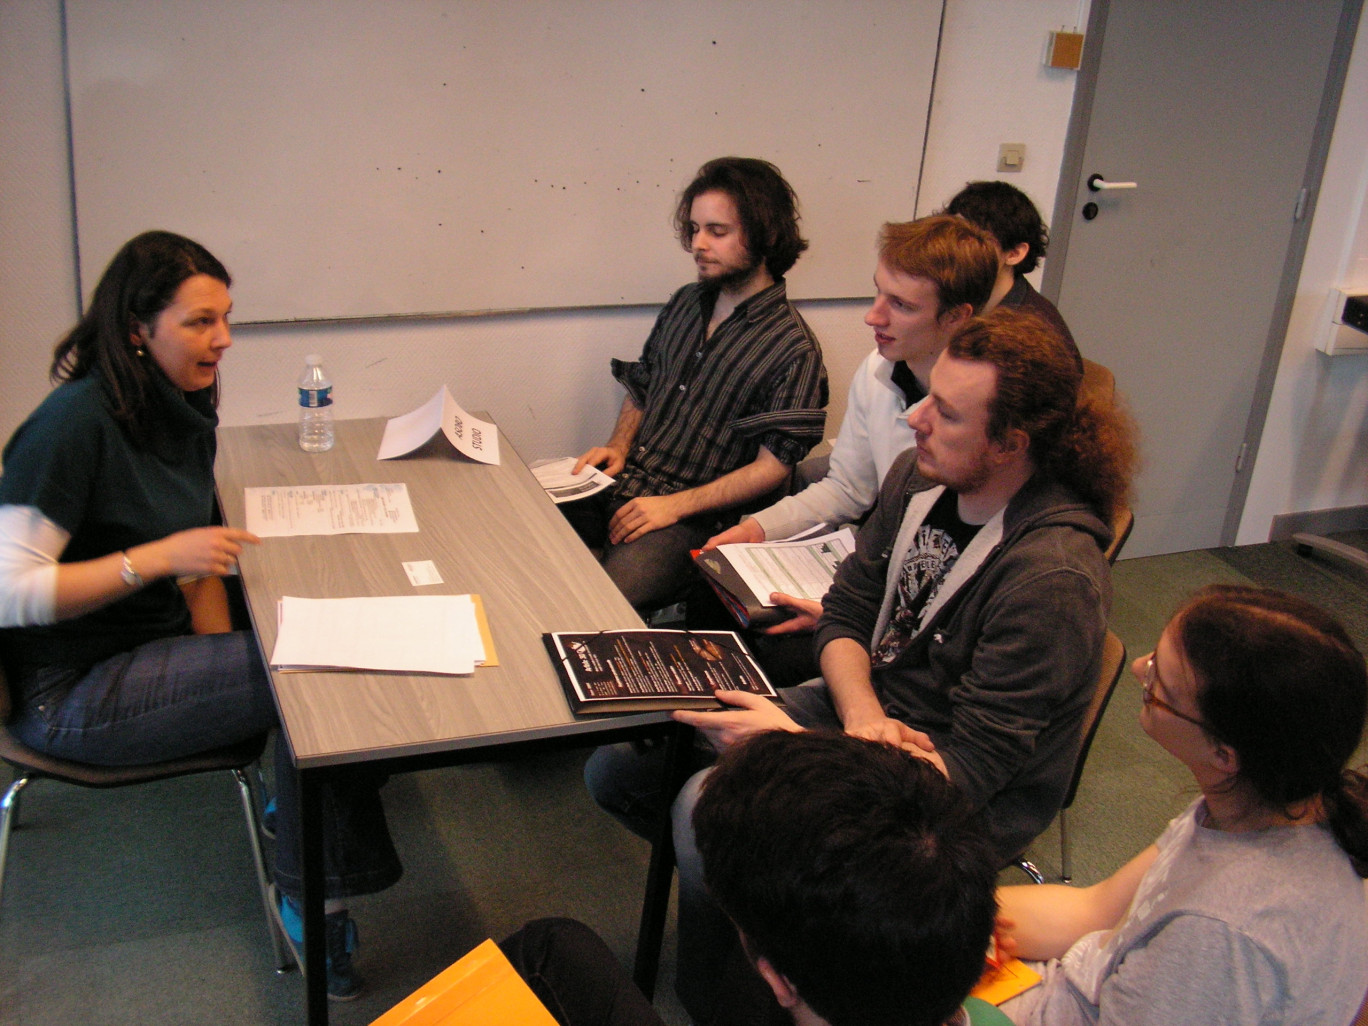 Une représentante de l’entreprise ASOBO de Bordeaux (développement de jeux pour console familiale) en compagnie d’étudiants.